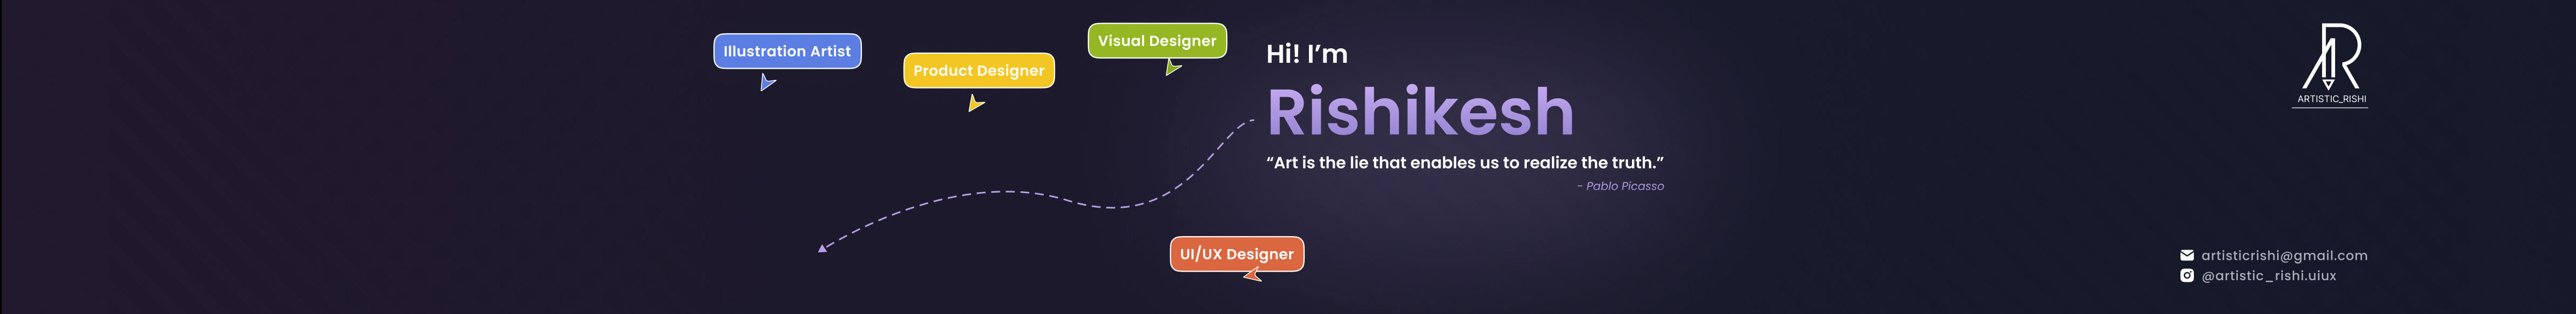 Banner del profilo di Rishikesh Malviya